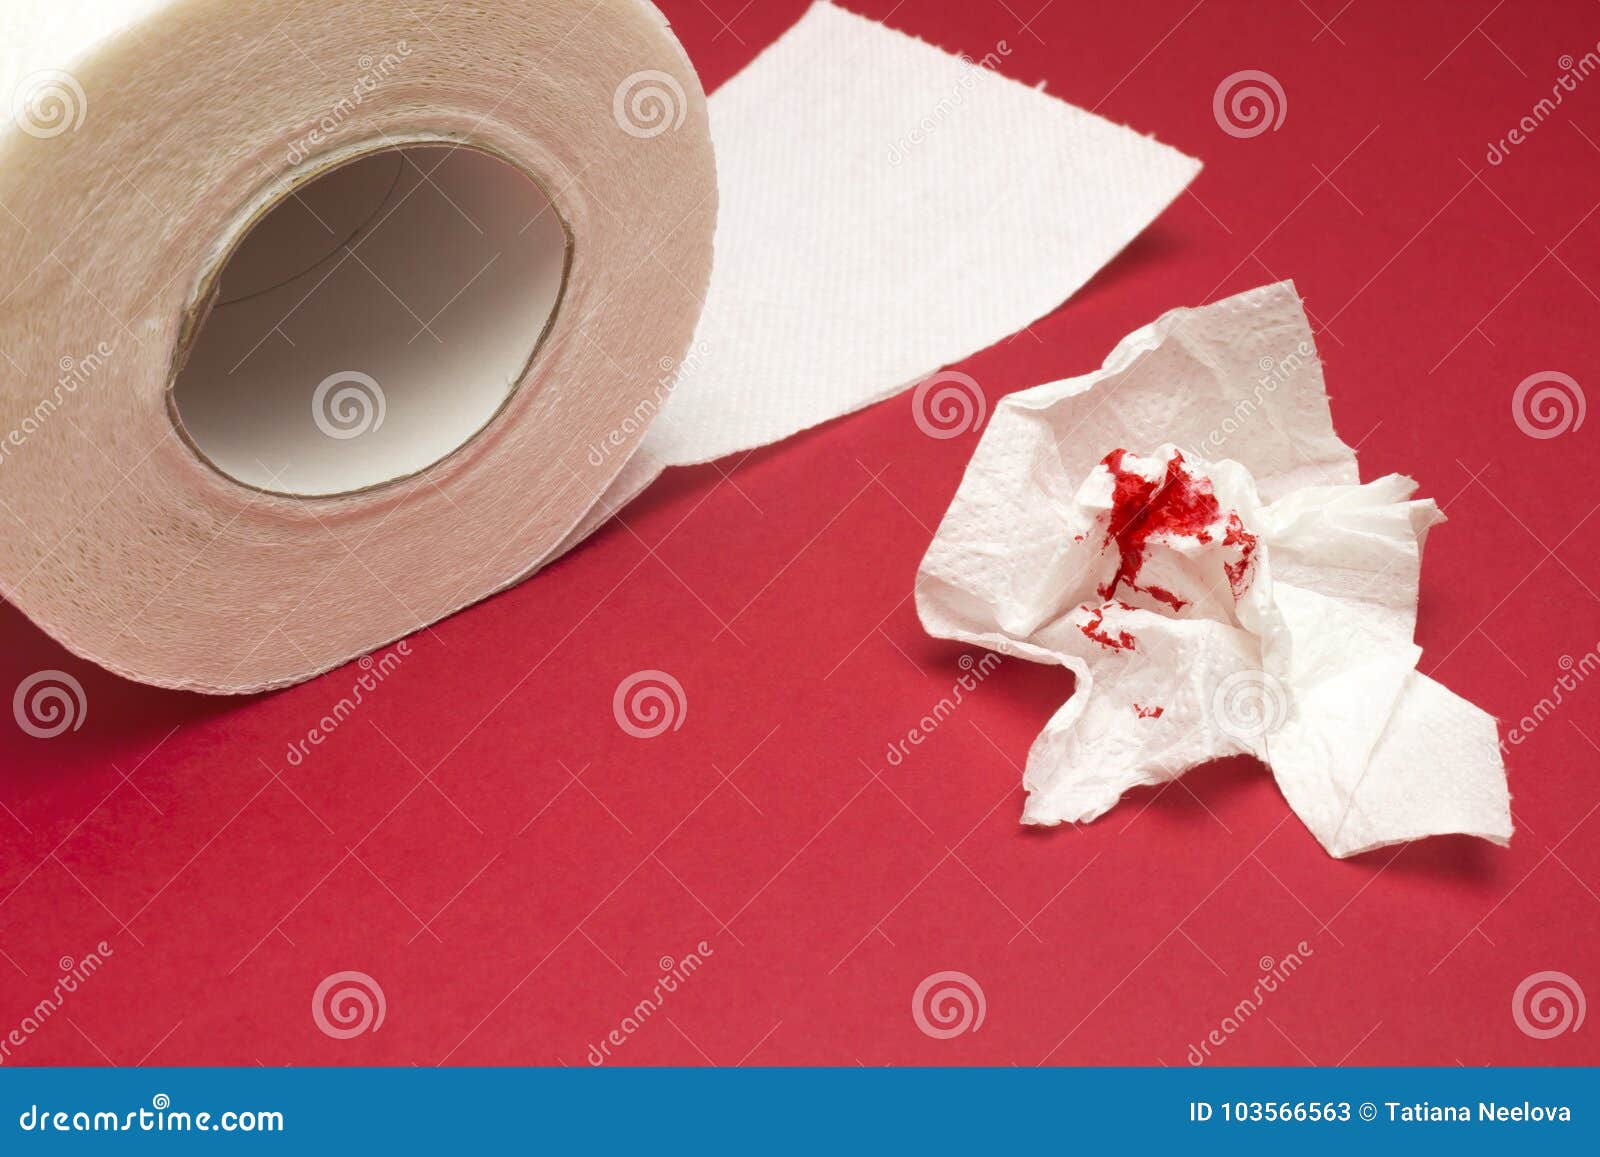 Кровь на туалетной бумаге после вытирания